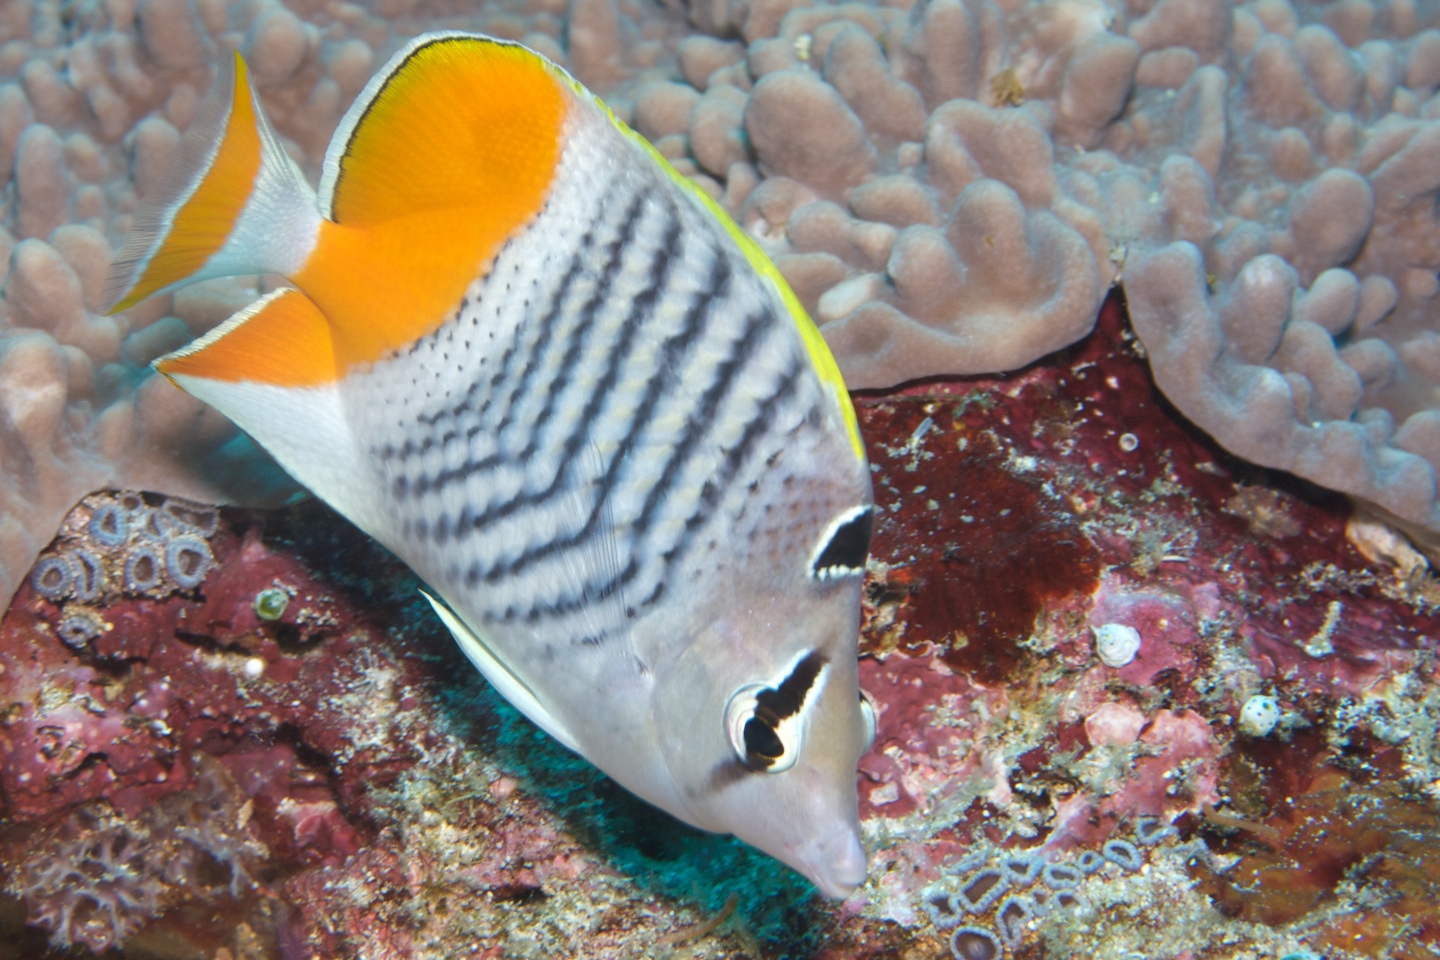 Madagascar butterflyfish